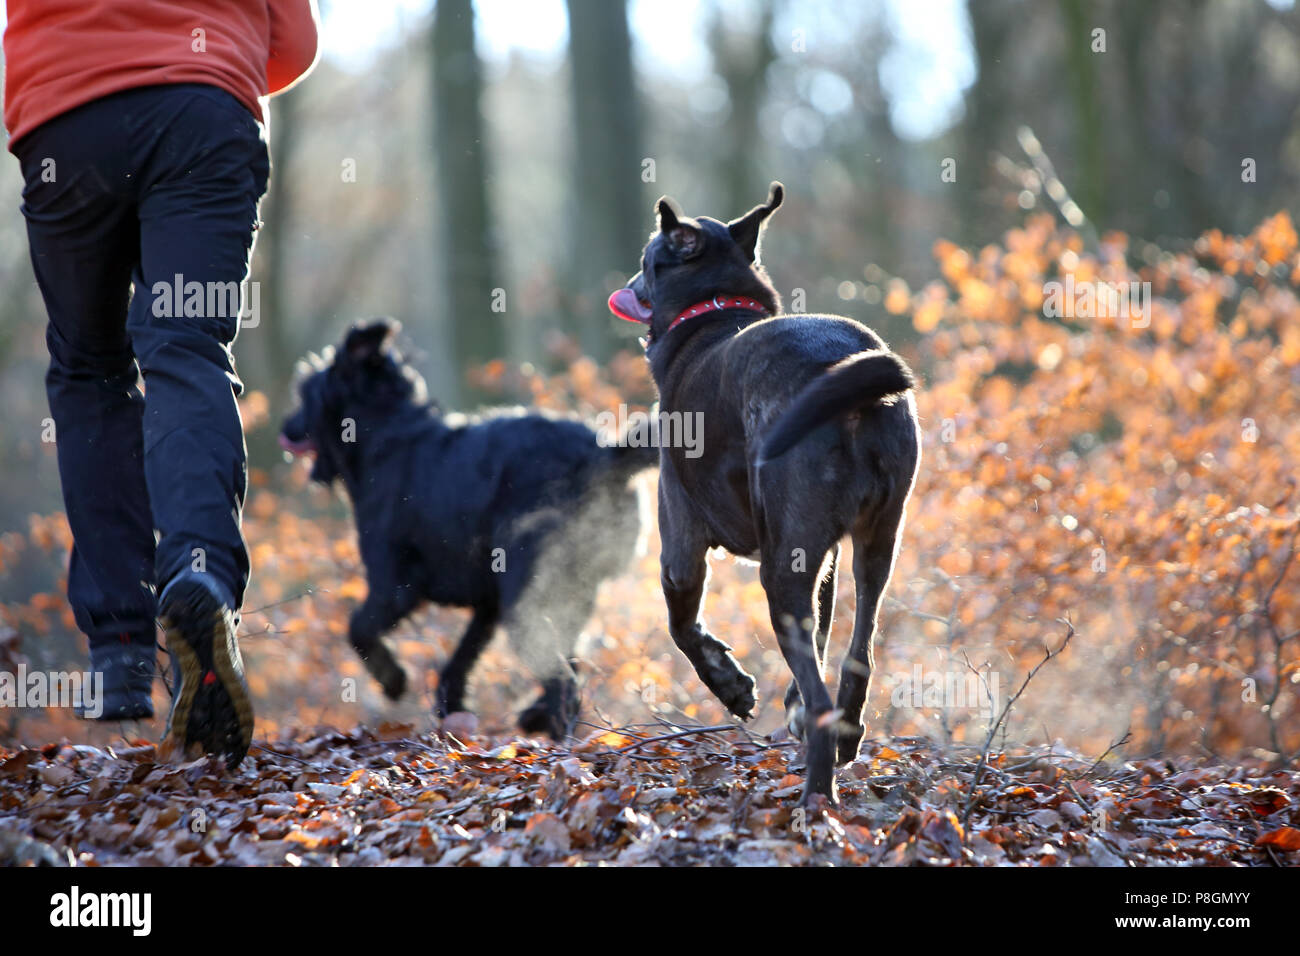 Nuevo símbolo Kaetwin, Alemania, foto, footing en el bosque con perros Foto de stock